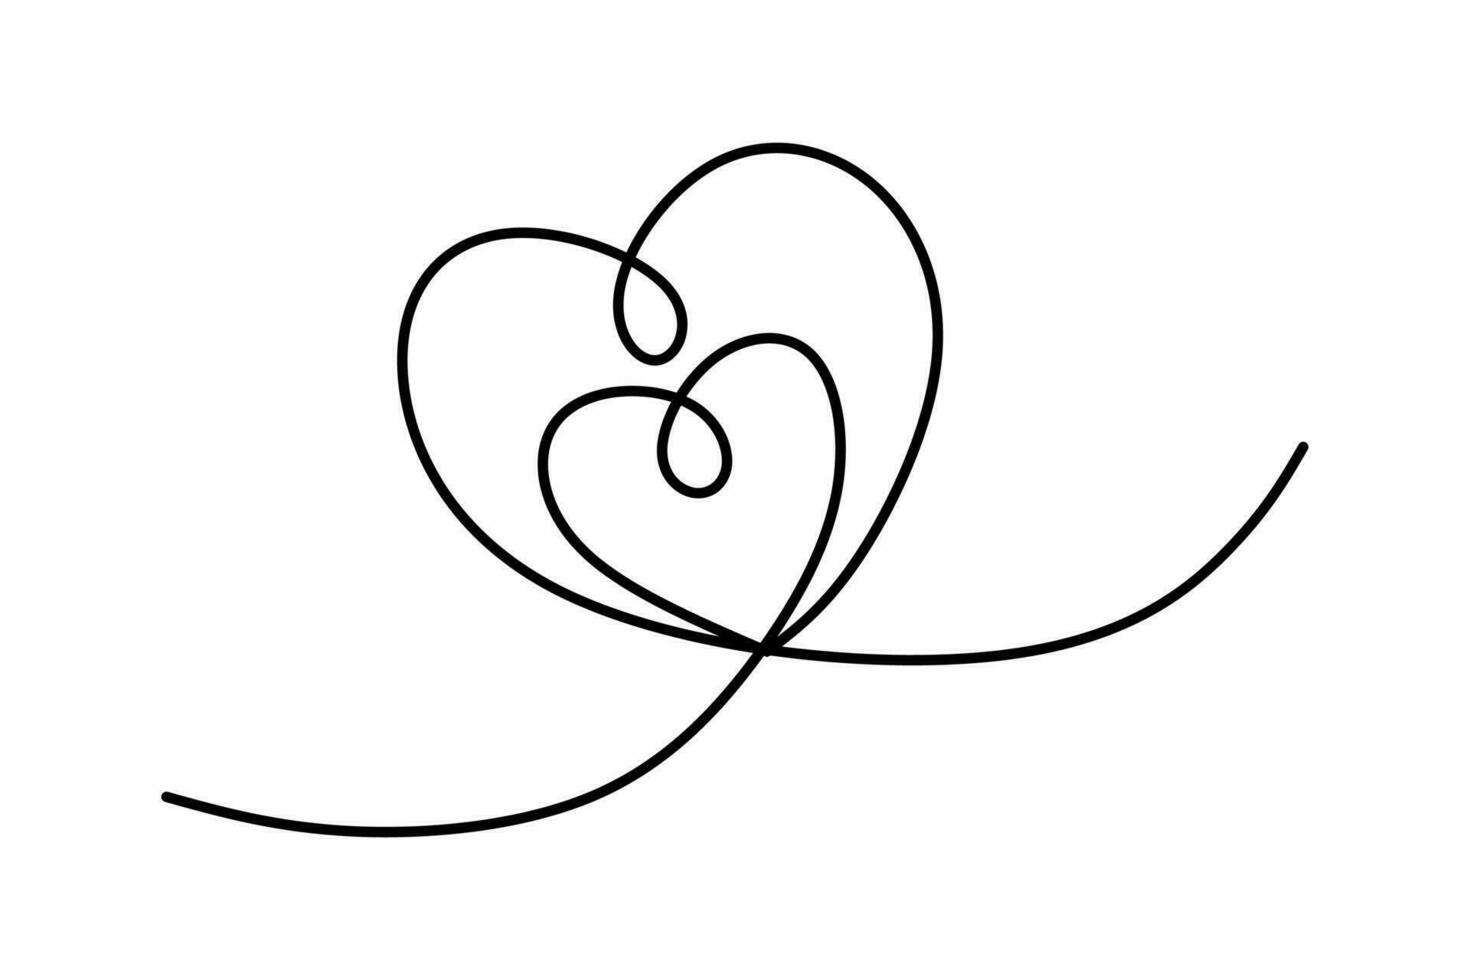 hjärta kontinuerlig ett linje teckning, dubbel- hjärta hand ritade, svart och vit vektor minimalistisk illustration av kärlek begrepp tillverkad av ett linje.